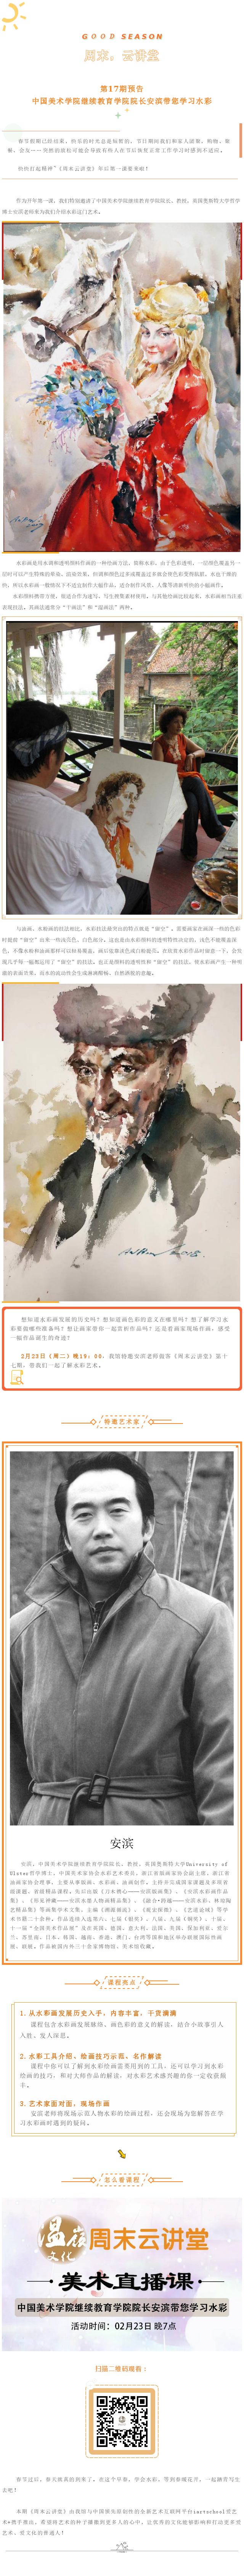 中国美术学院继续教育学院院长安滨带您学习水彩.png